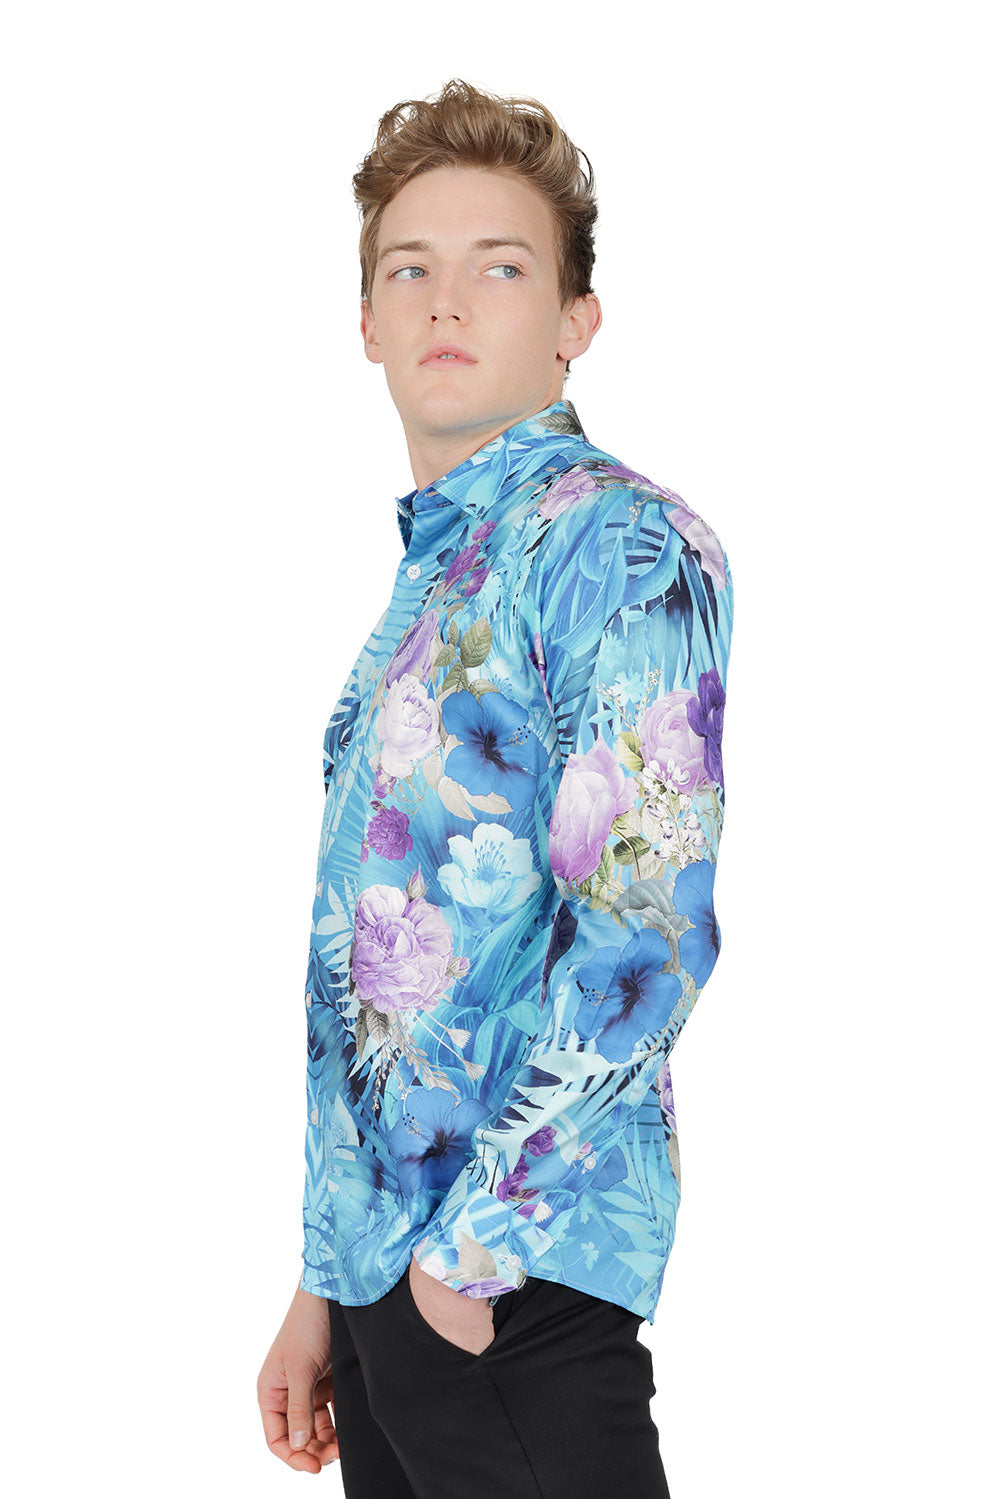 Barabas Men's Floral Print Design Luxury Button Down Shirt SP14 Blue